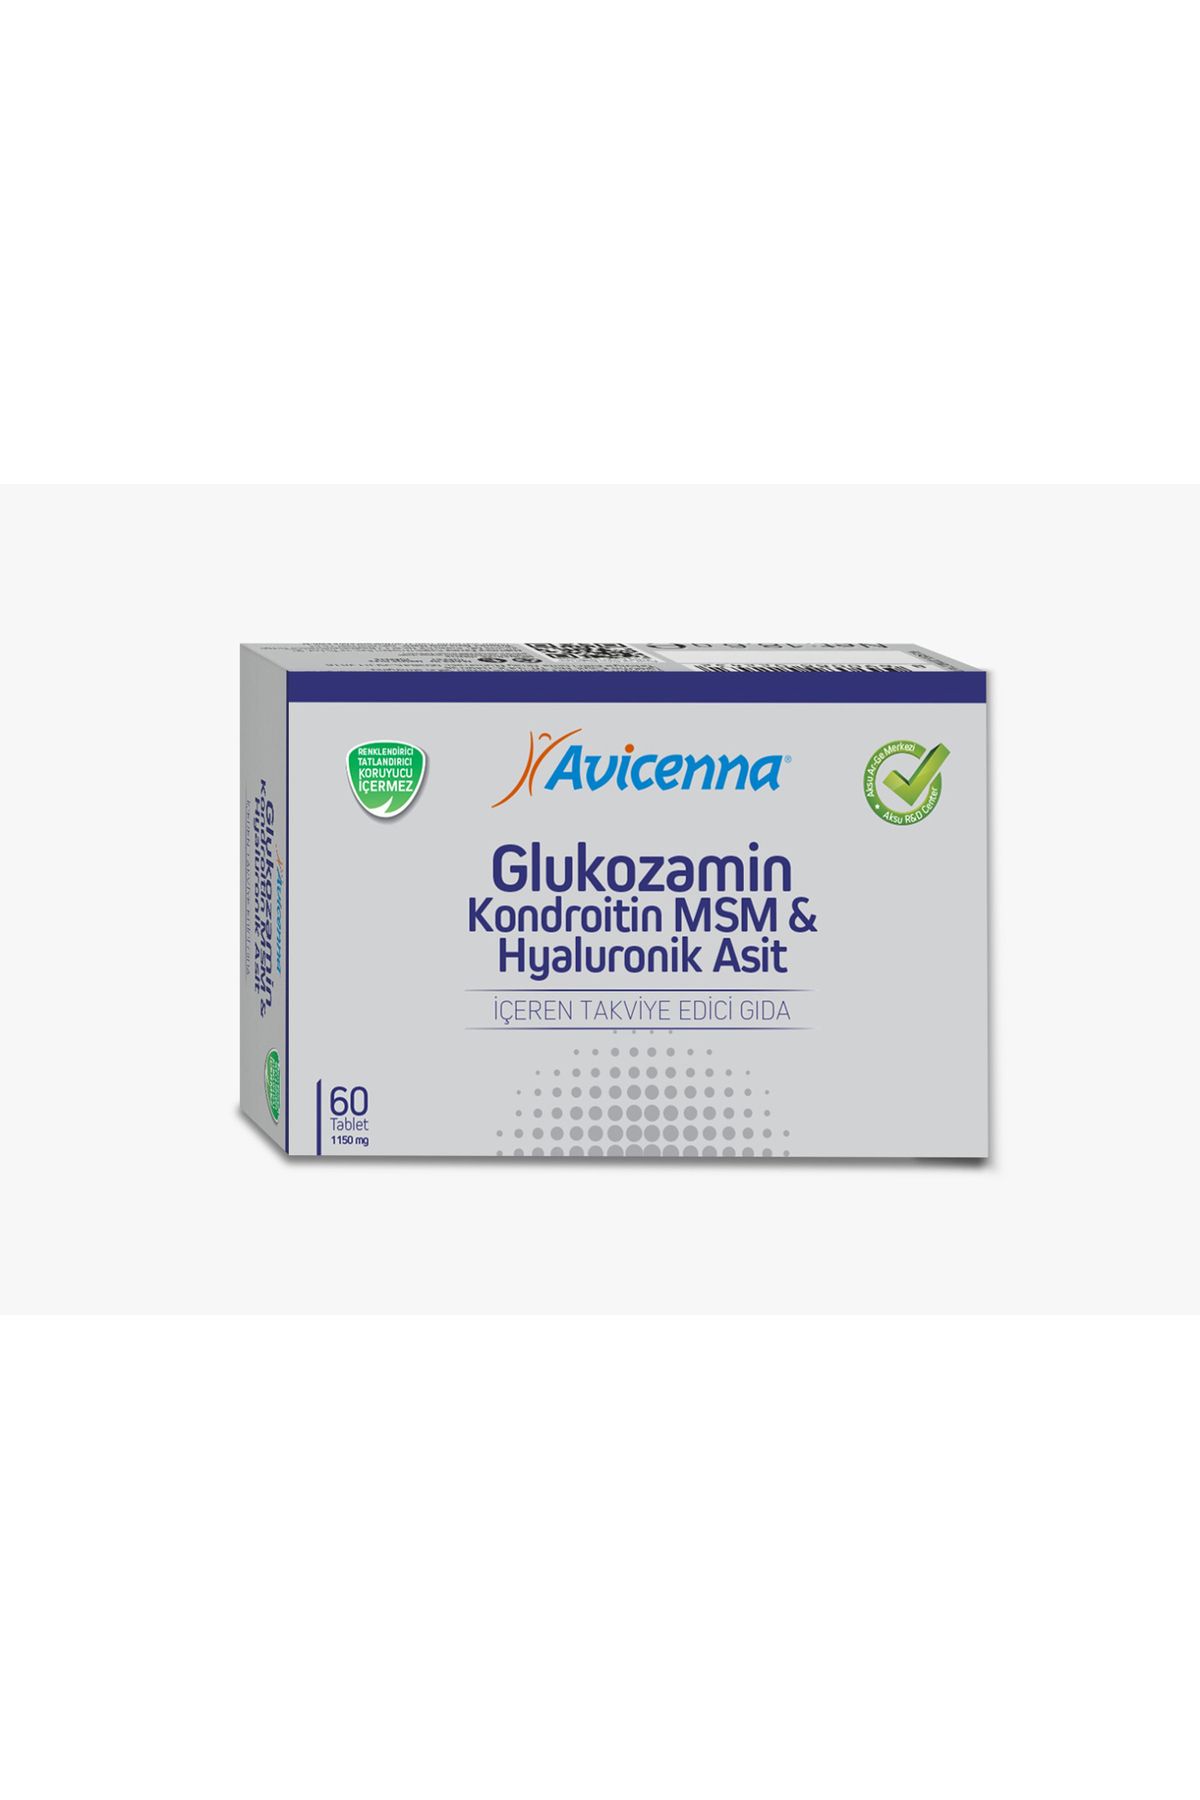 Avicenna Glukozamin Kondroitin MSM & Hyaluronik Asit 60 Tablet